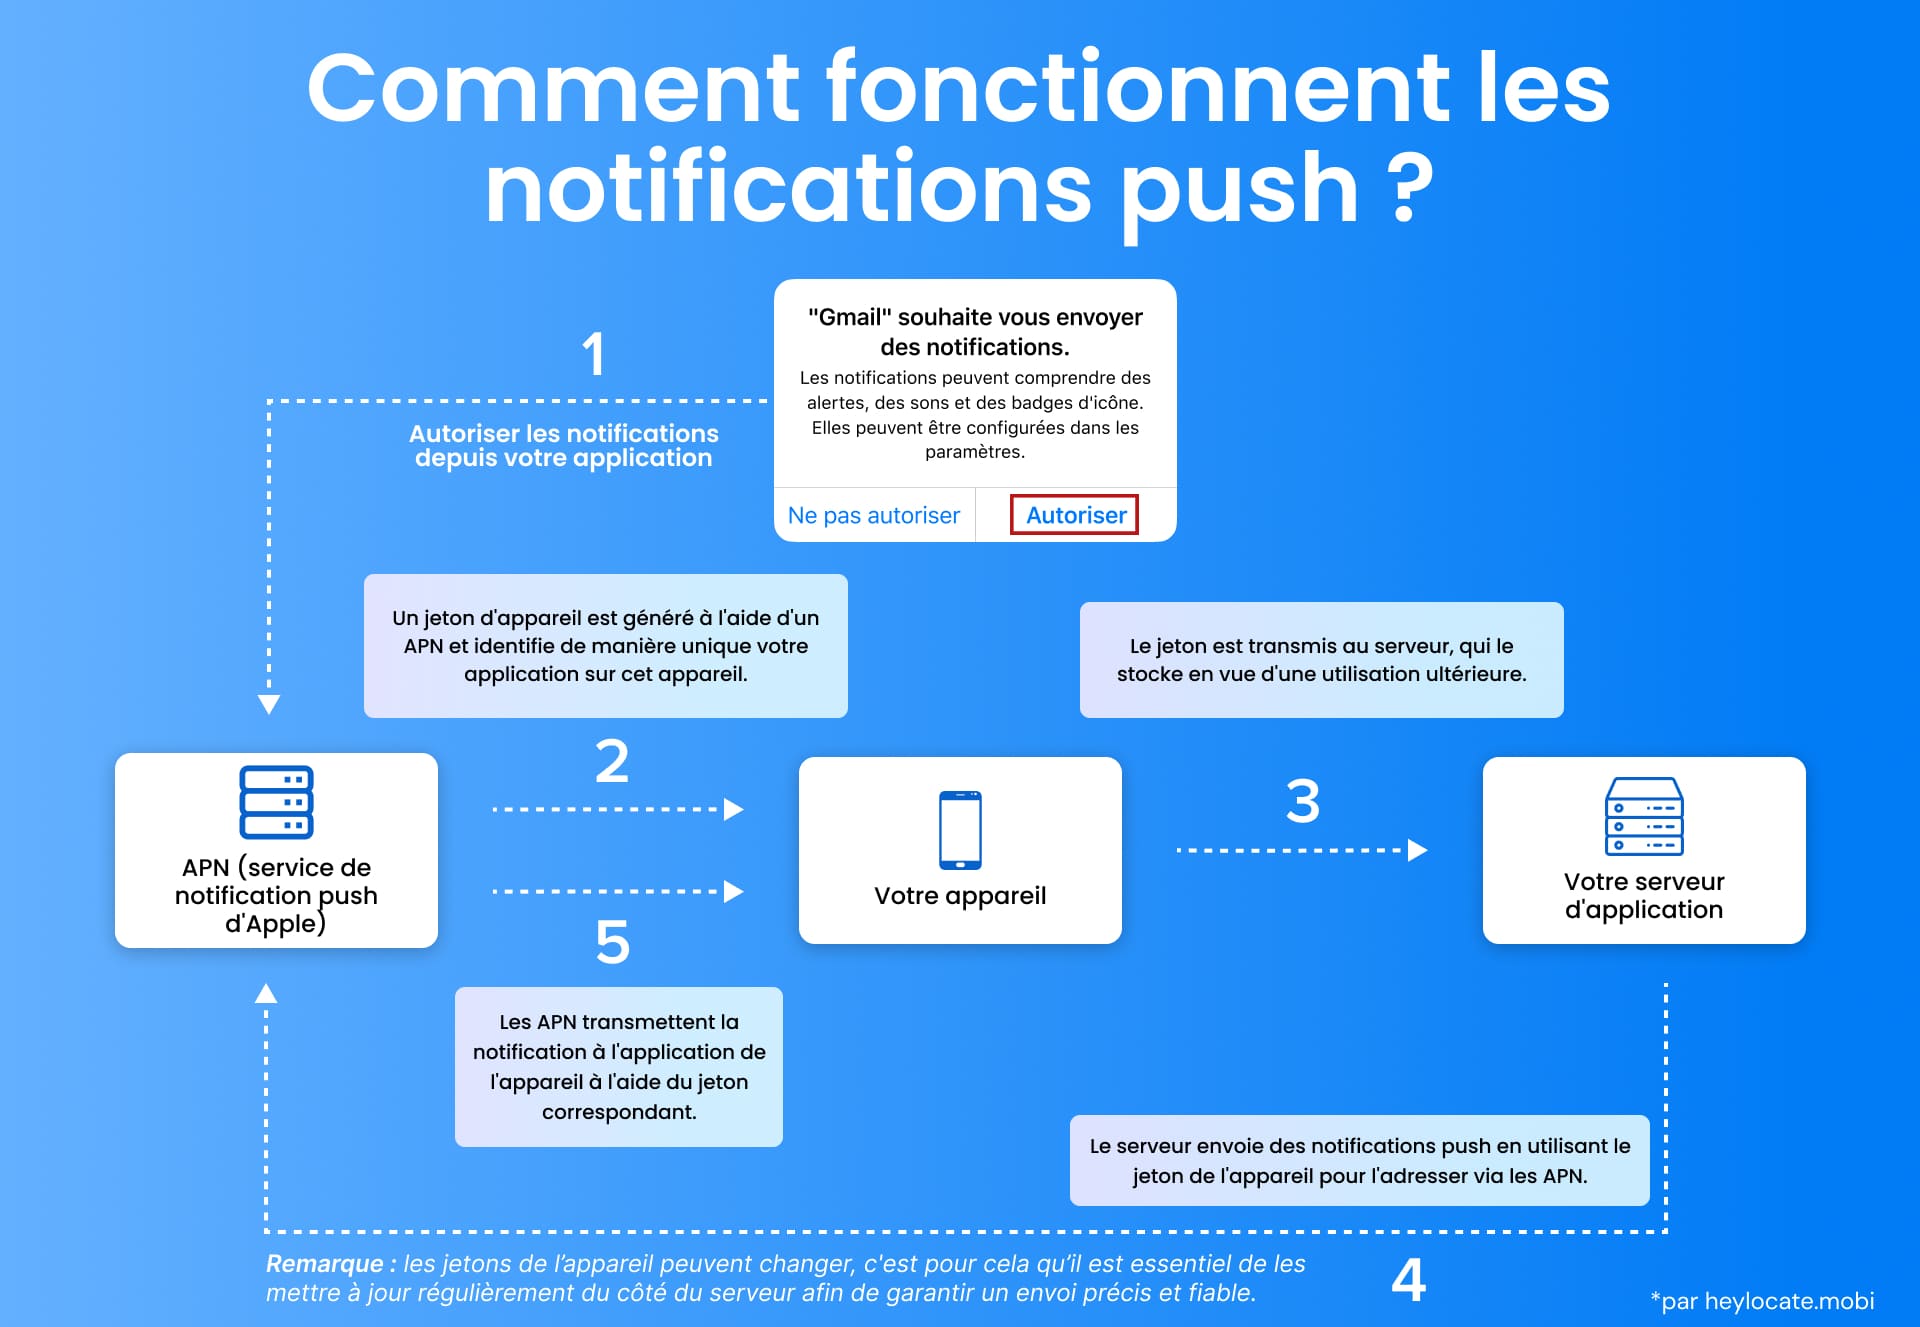 Graphique explicatif du fonctionnement des notifications push, depuis le moment où un utilisateur autorise une notification à partir d'une application, en passant par le cycle complet du serveur de l'application et des APN, jusqu'à la transmission de la notification à l'appareil de l'utilisateur